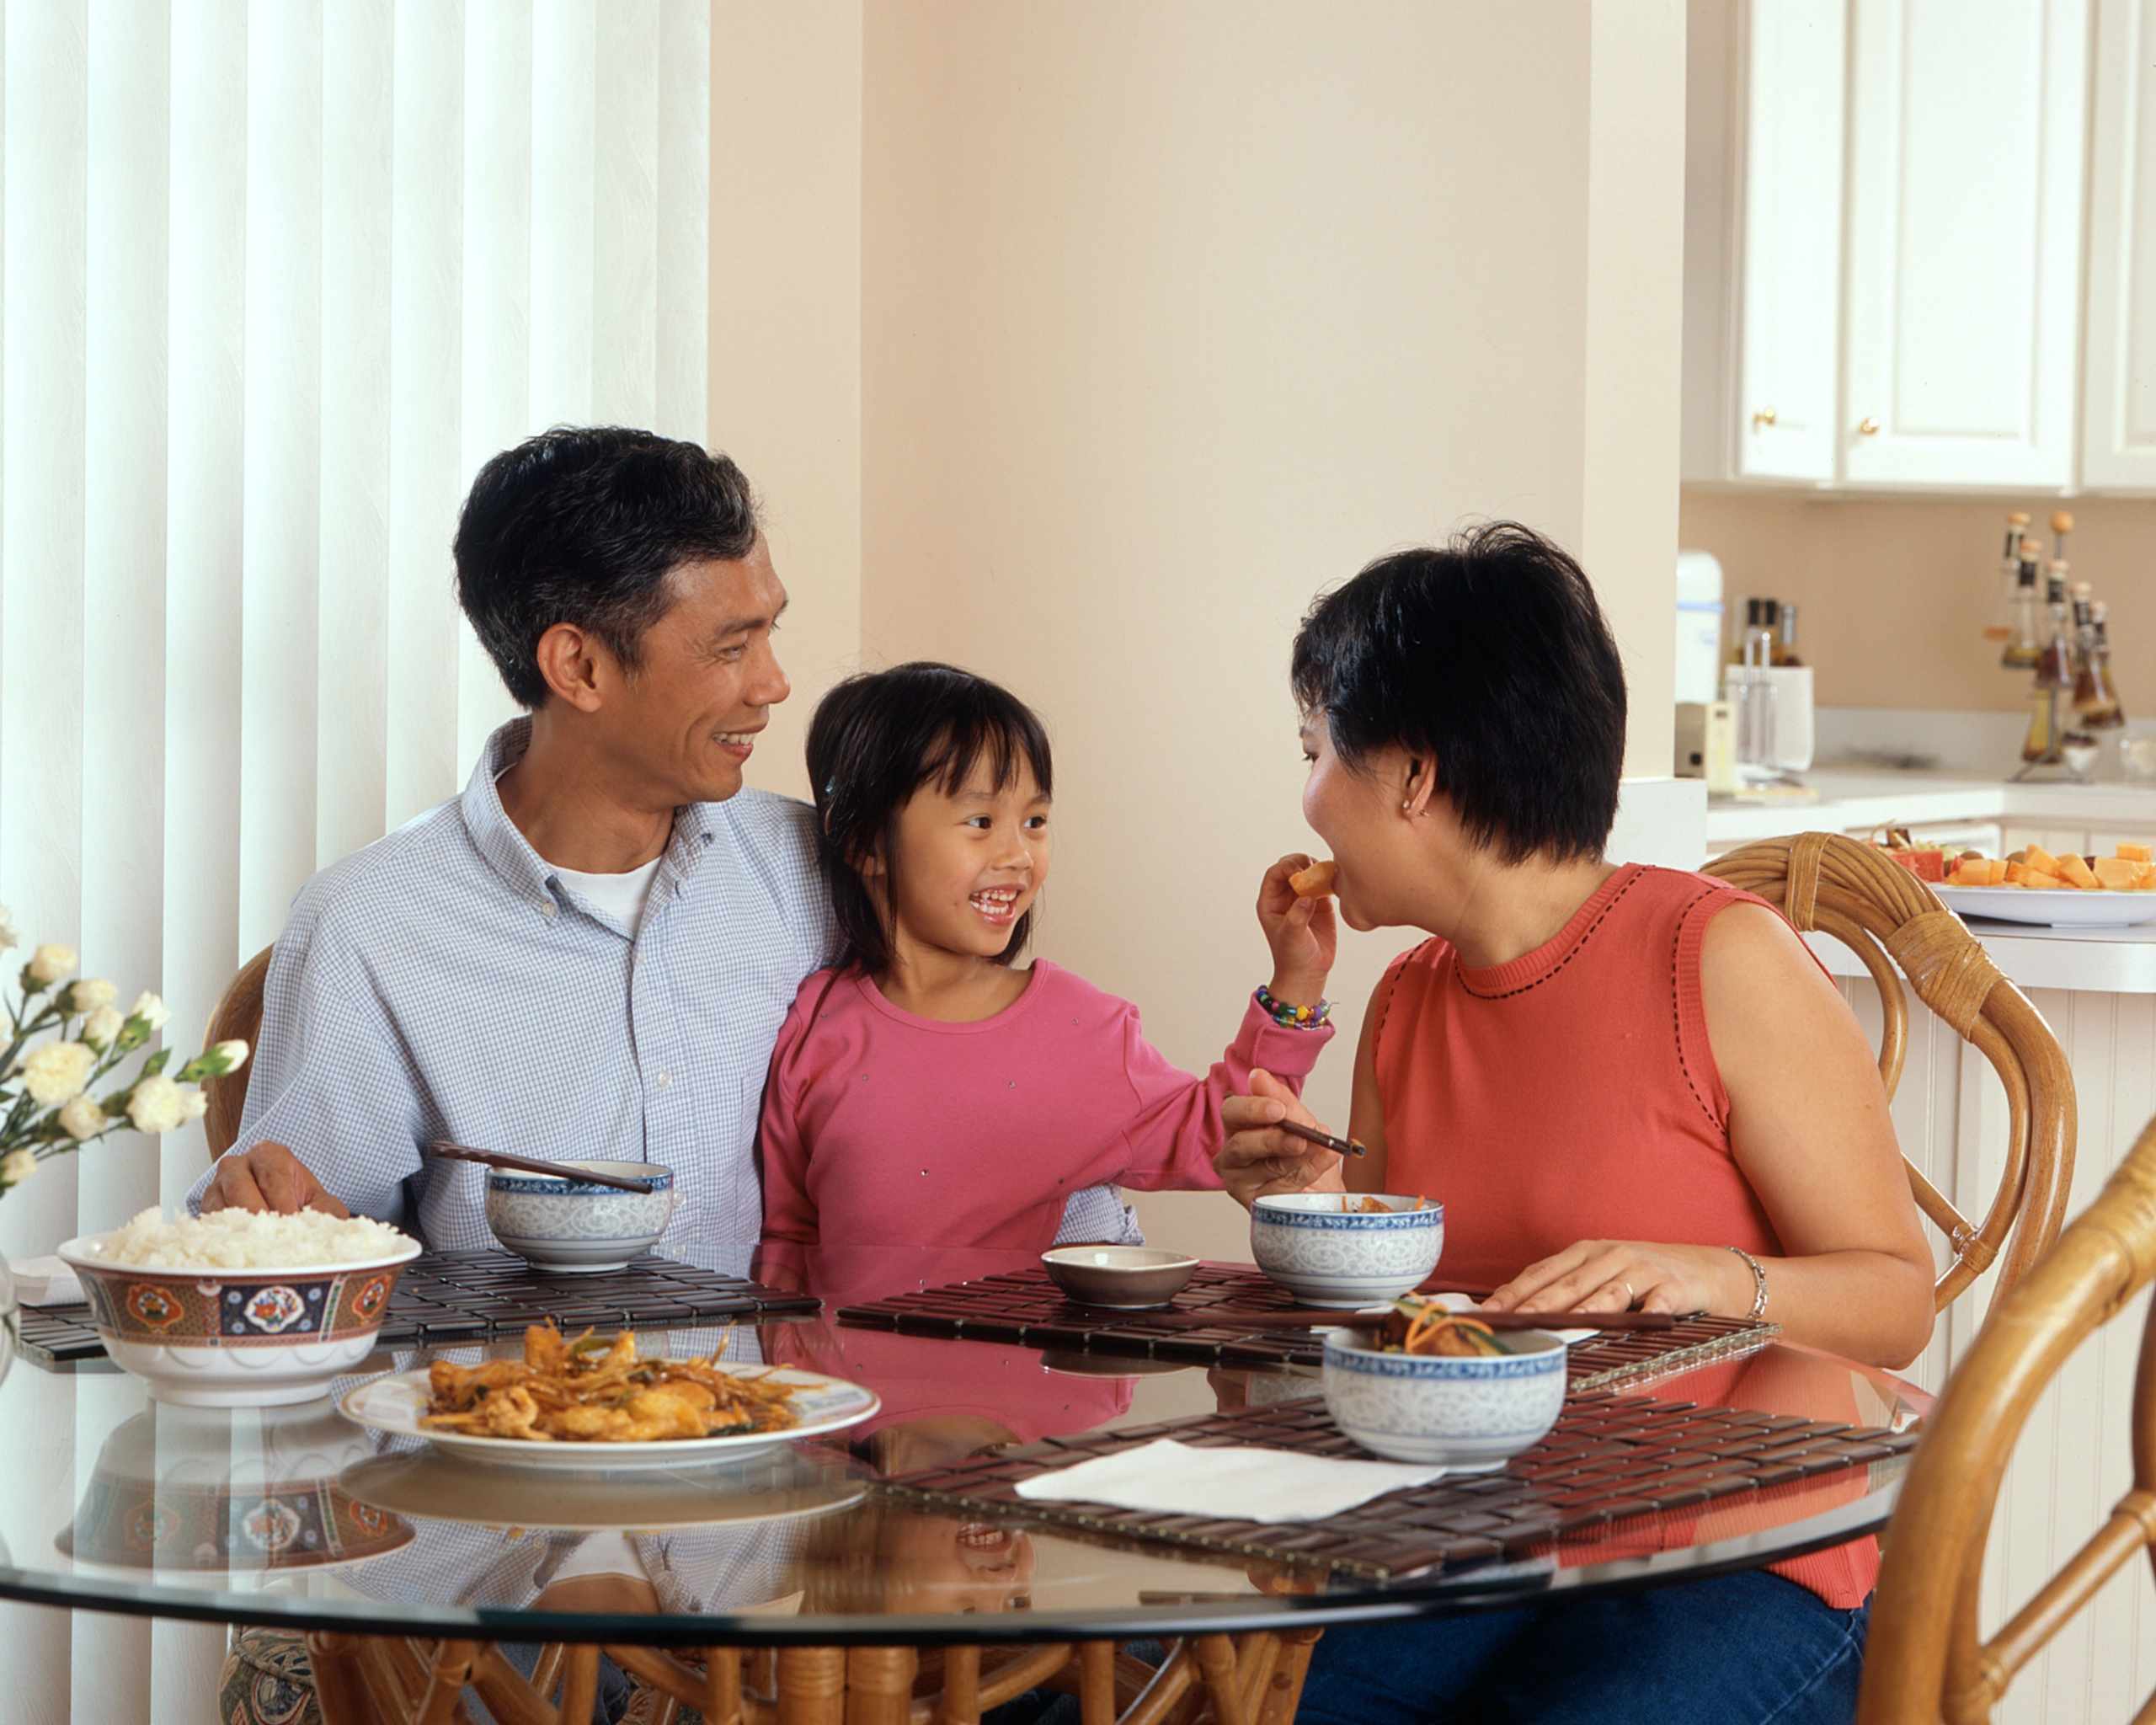 Three ways to make family mealtimes healthier